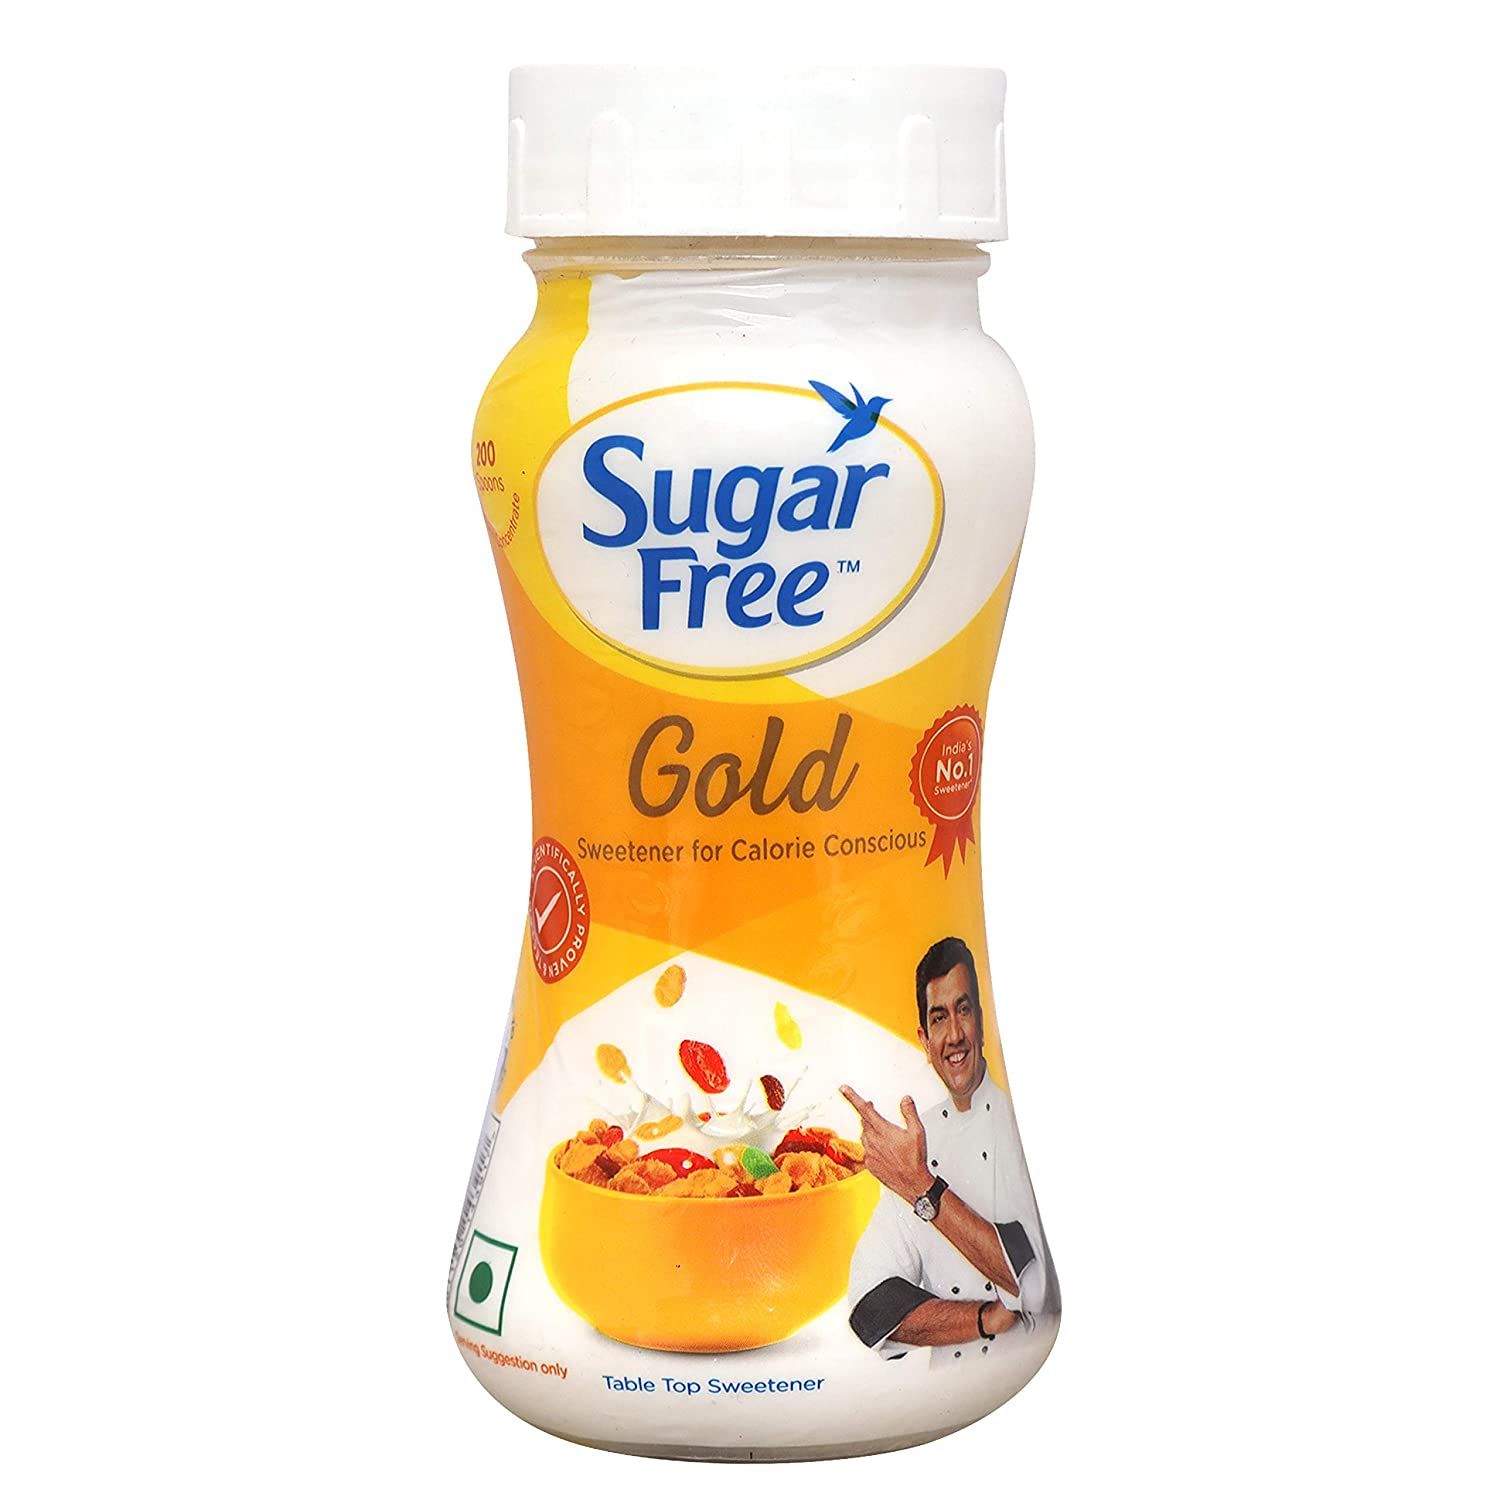 Sugar Free Table Top Sweetener Powder Image